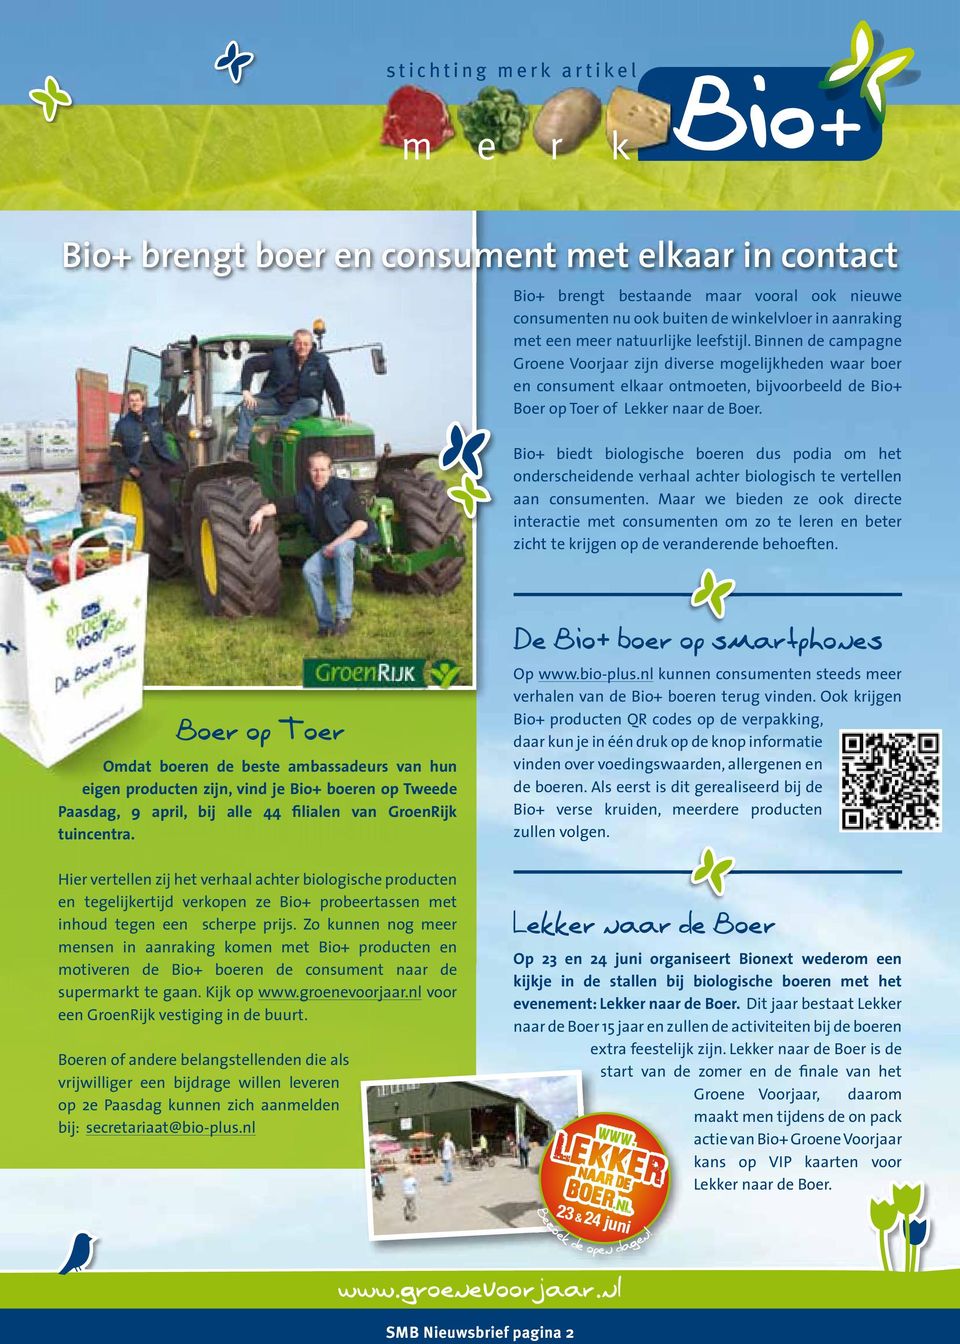 Bio+ biedt biologische boeren dus podia om het onderscheidende verhaal achter biologisch te vertellen aan consumenten.